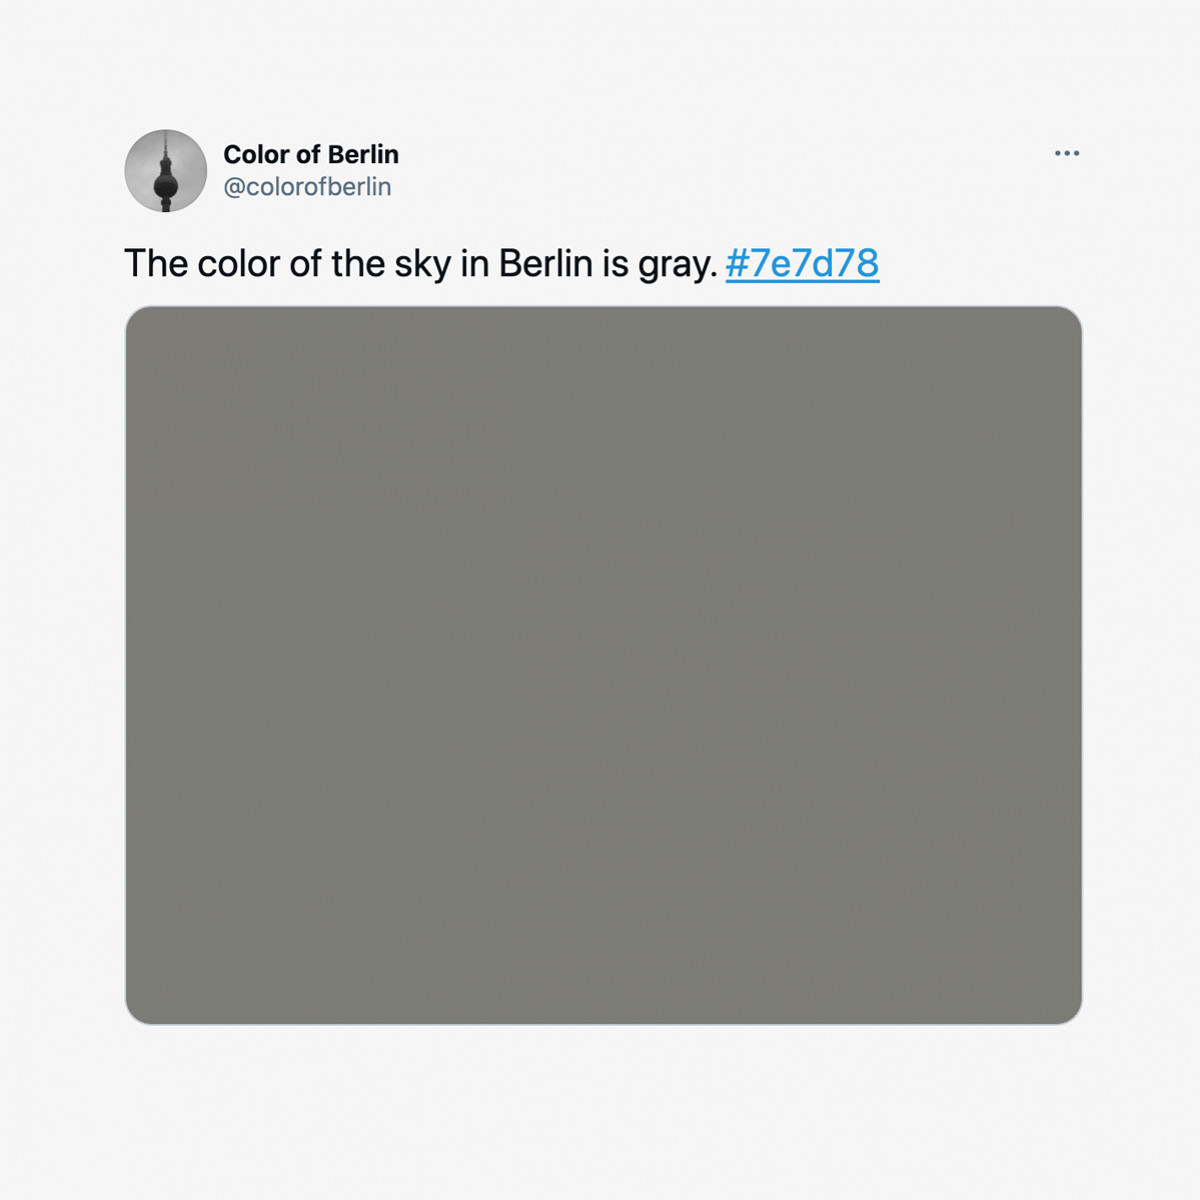 Бот отвечает на важный вопрос, насколько серое небо Берлина: темно-серое или тускло-серое